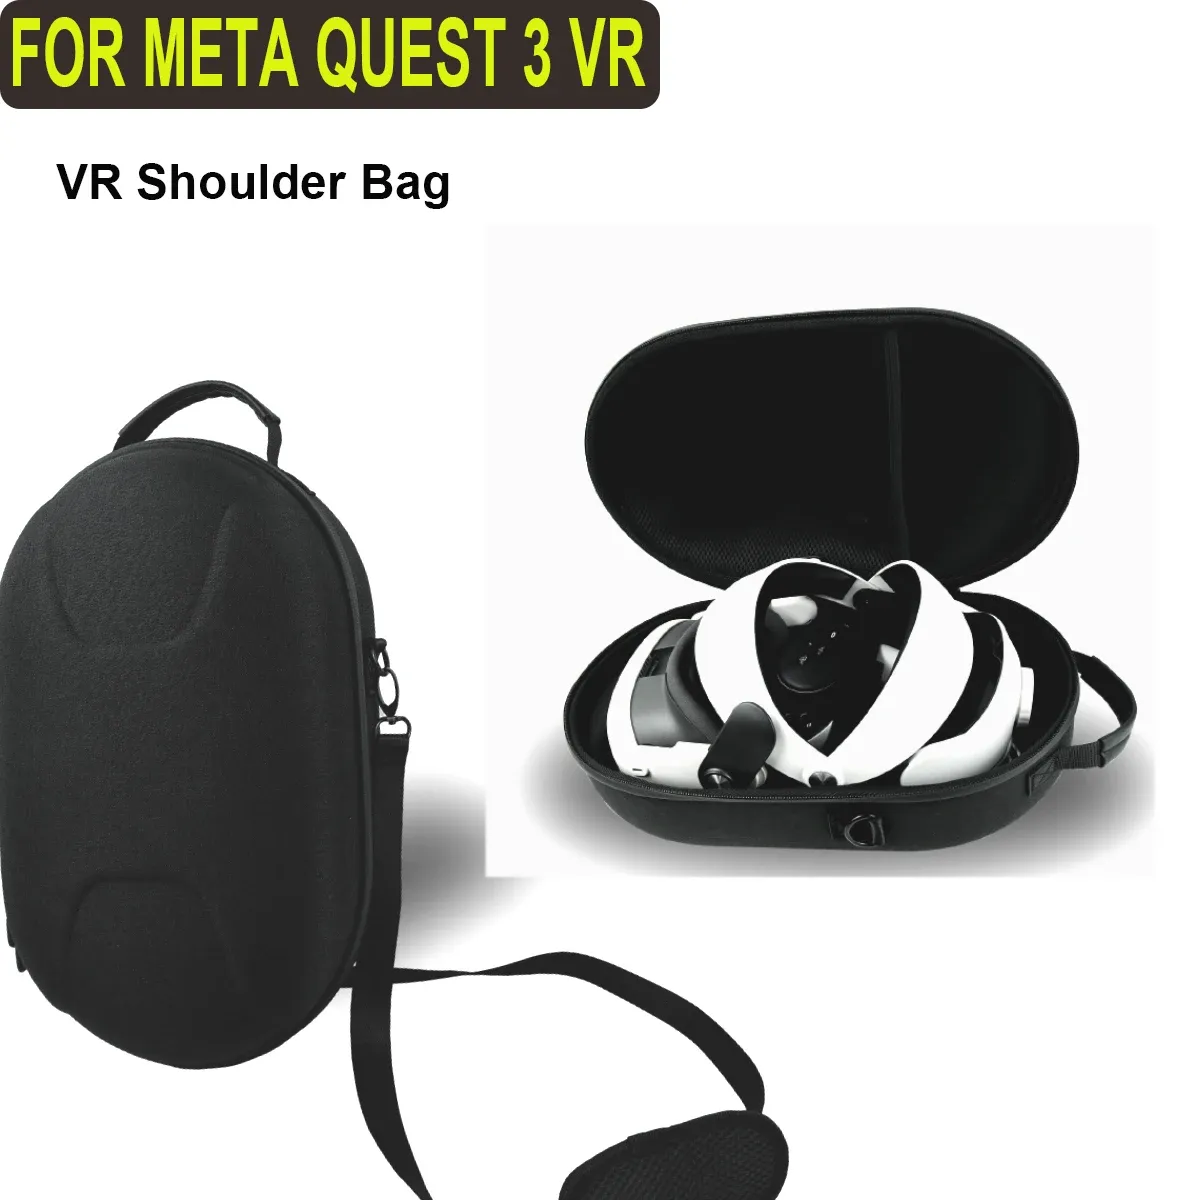 Étui à verres pour méta quête 3 sac VR Casque de casque Protector Sac étalage étanche pour accessoire Meta Qust 3 VR